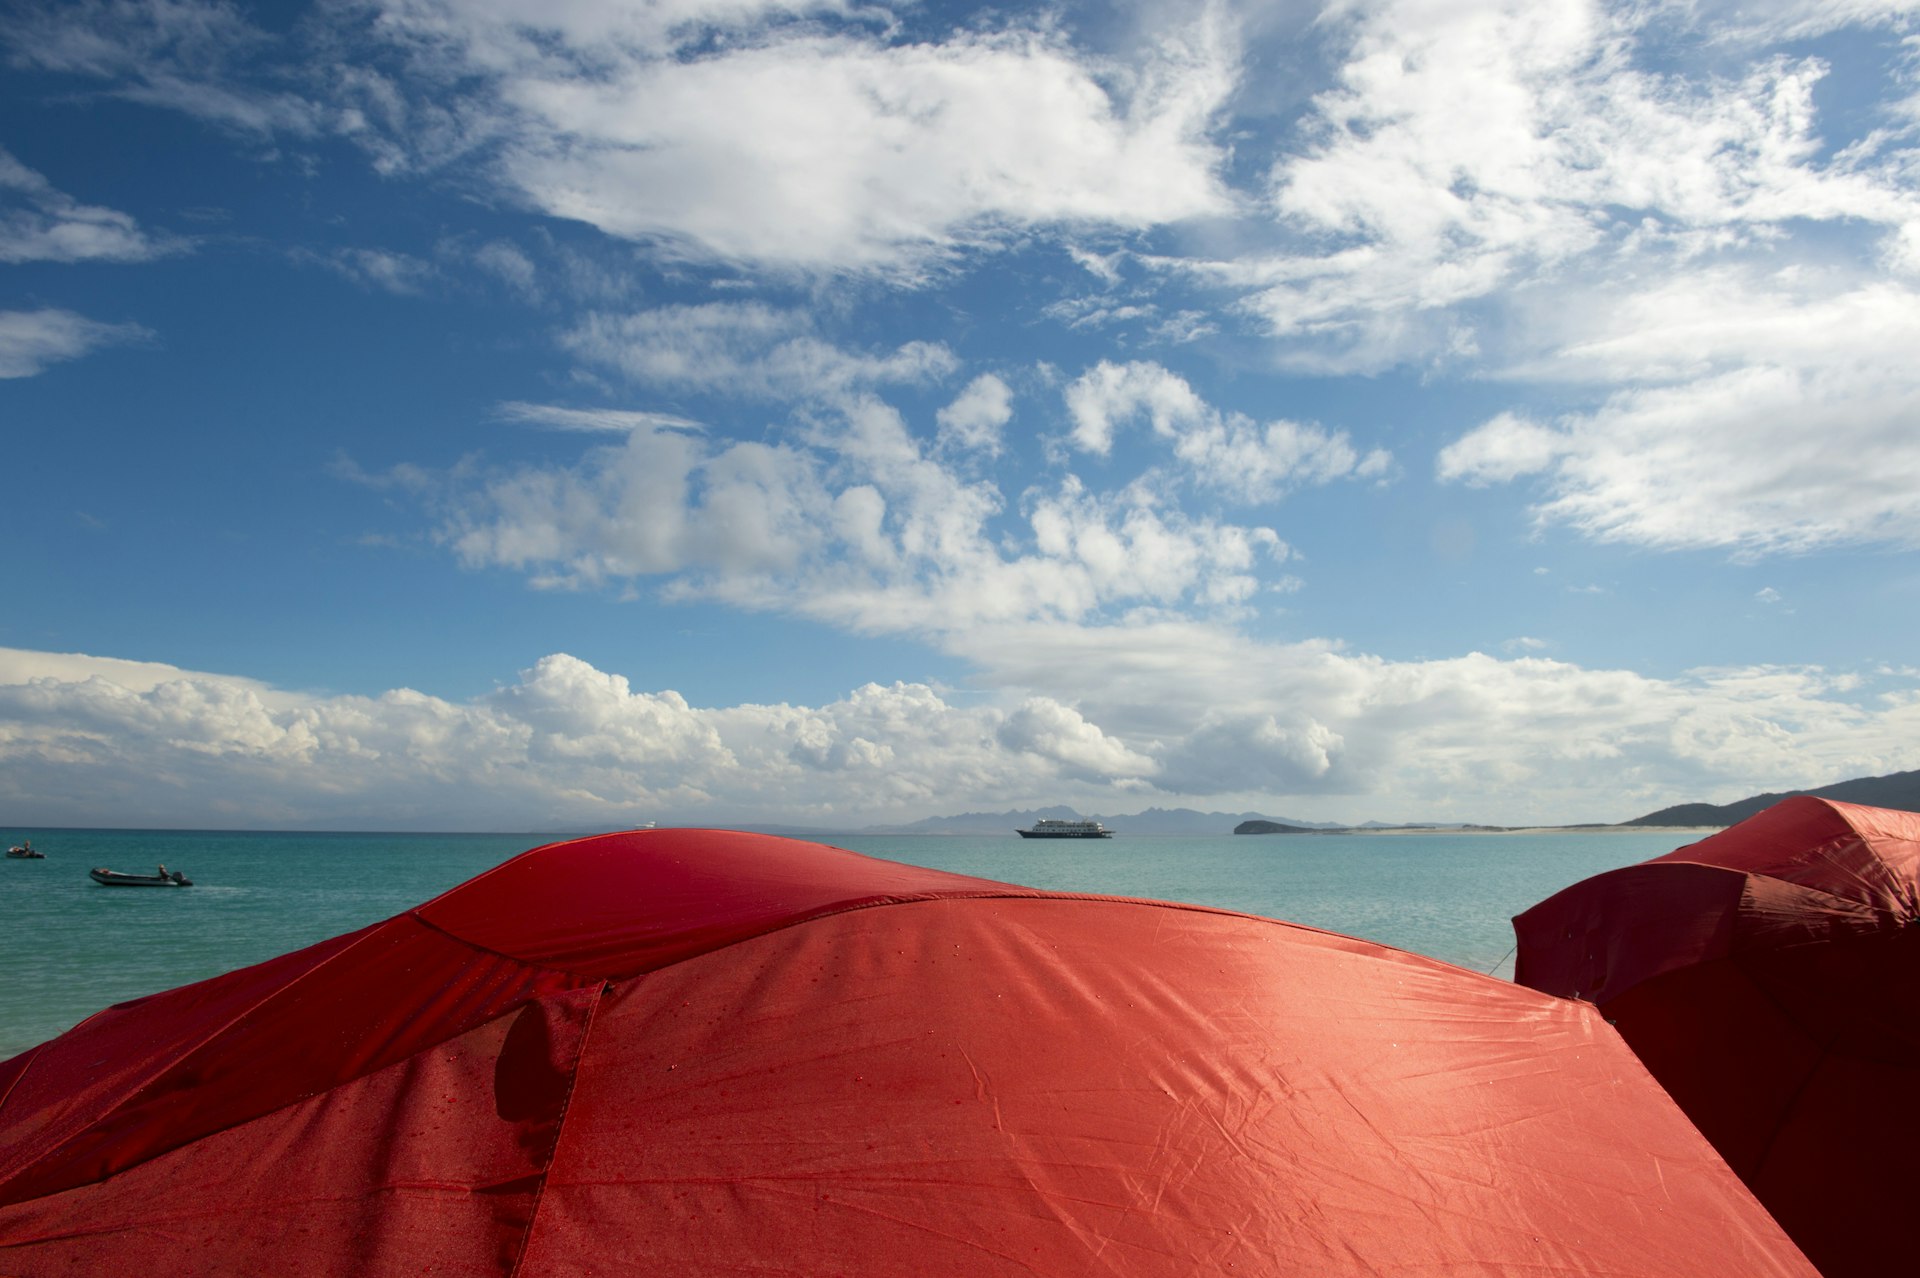 Red sun umbrellas on a beach on the Isla Espiritu Santo in the Bahia de La Paz, Sea of Cortez in Baja California Mexico